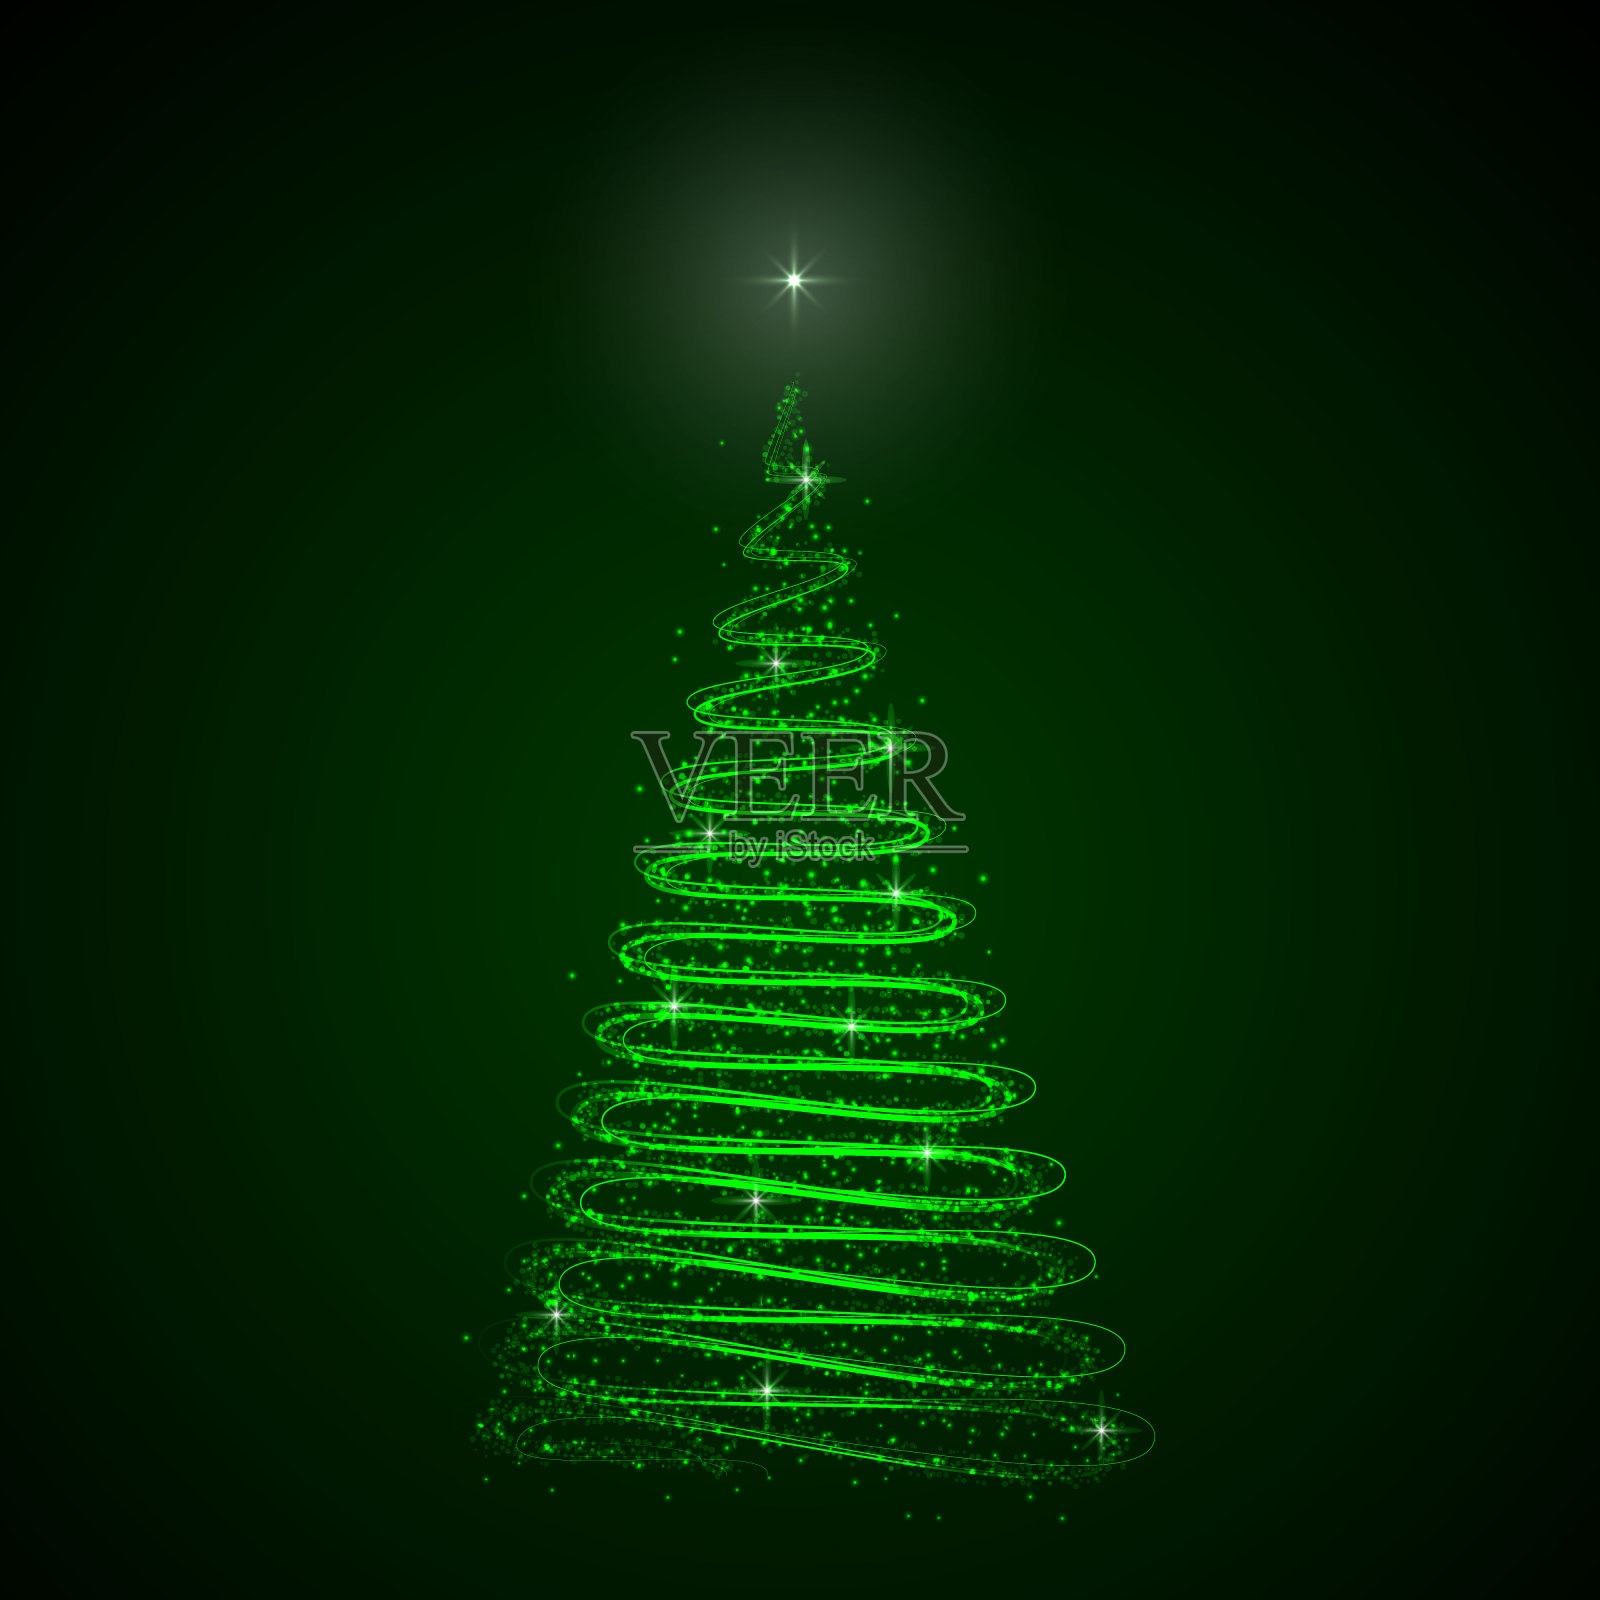 抽象的圣诞树在黑暗的背景。设计模板插画图片素材